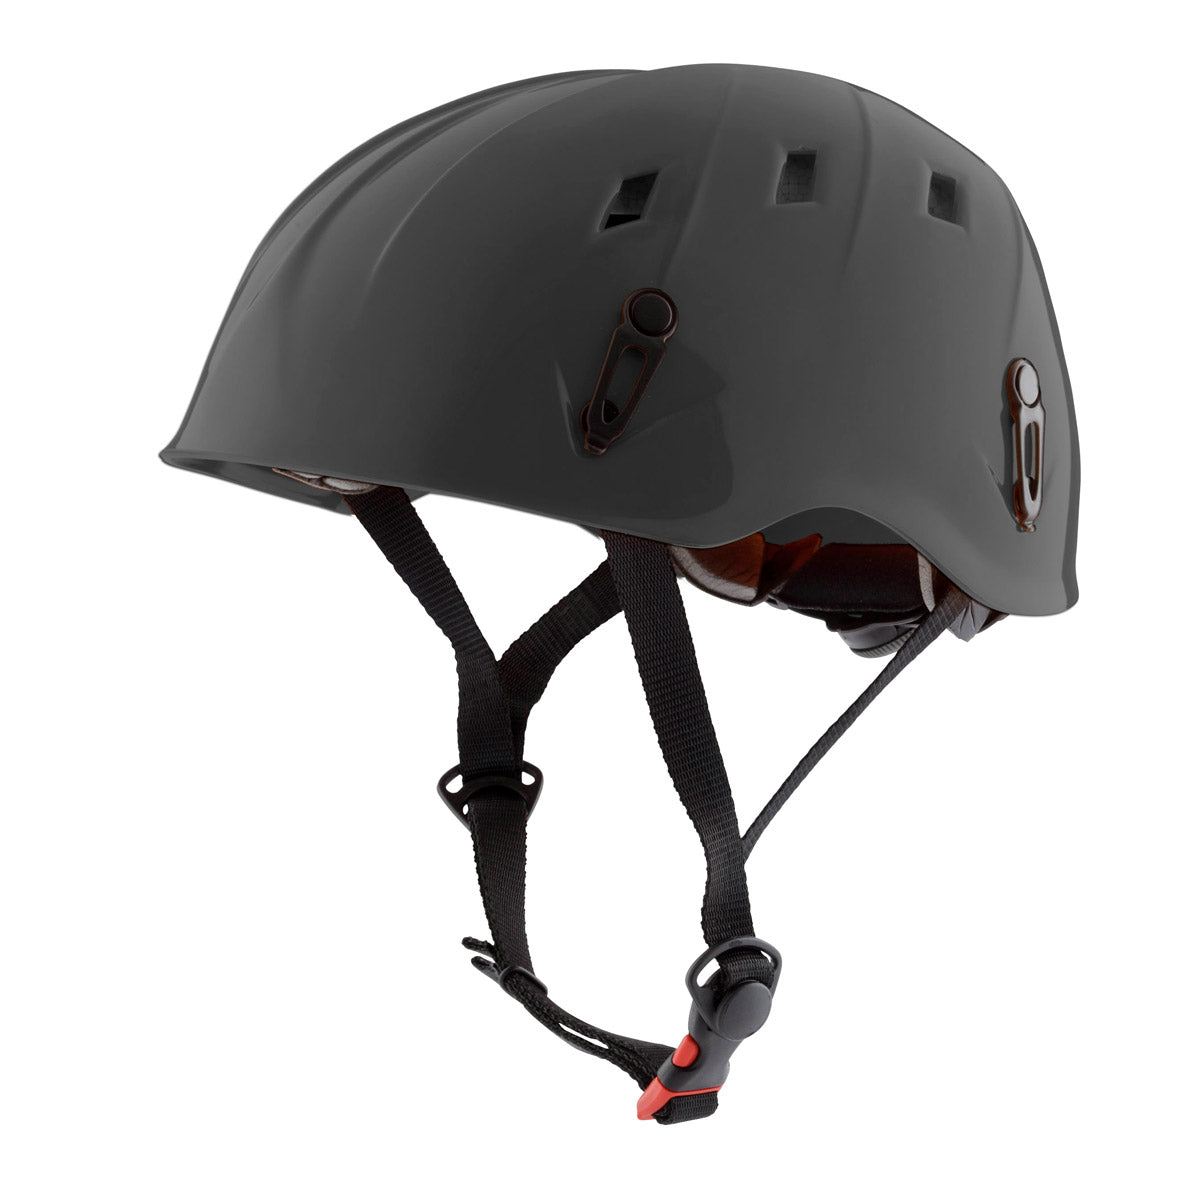 意大利登山攀岩頭盔 K2 Plus Helmet